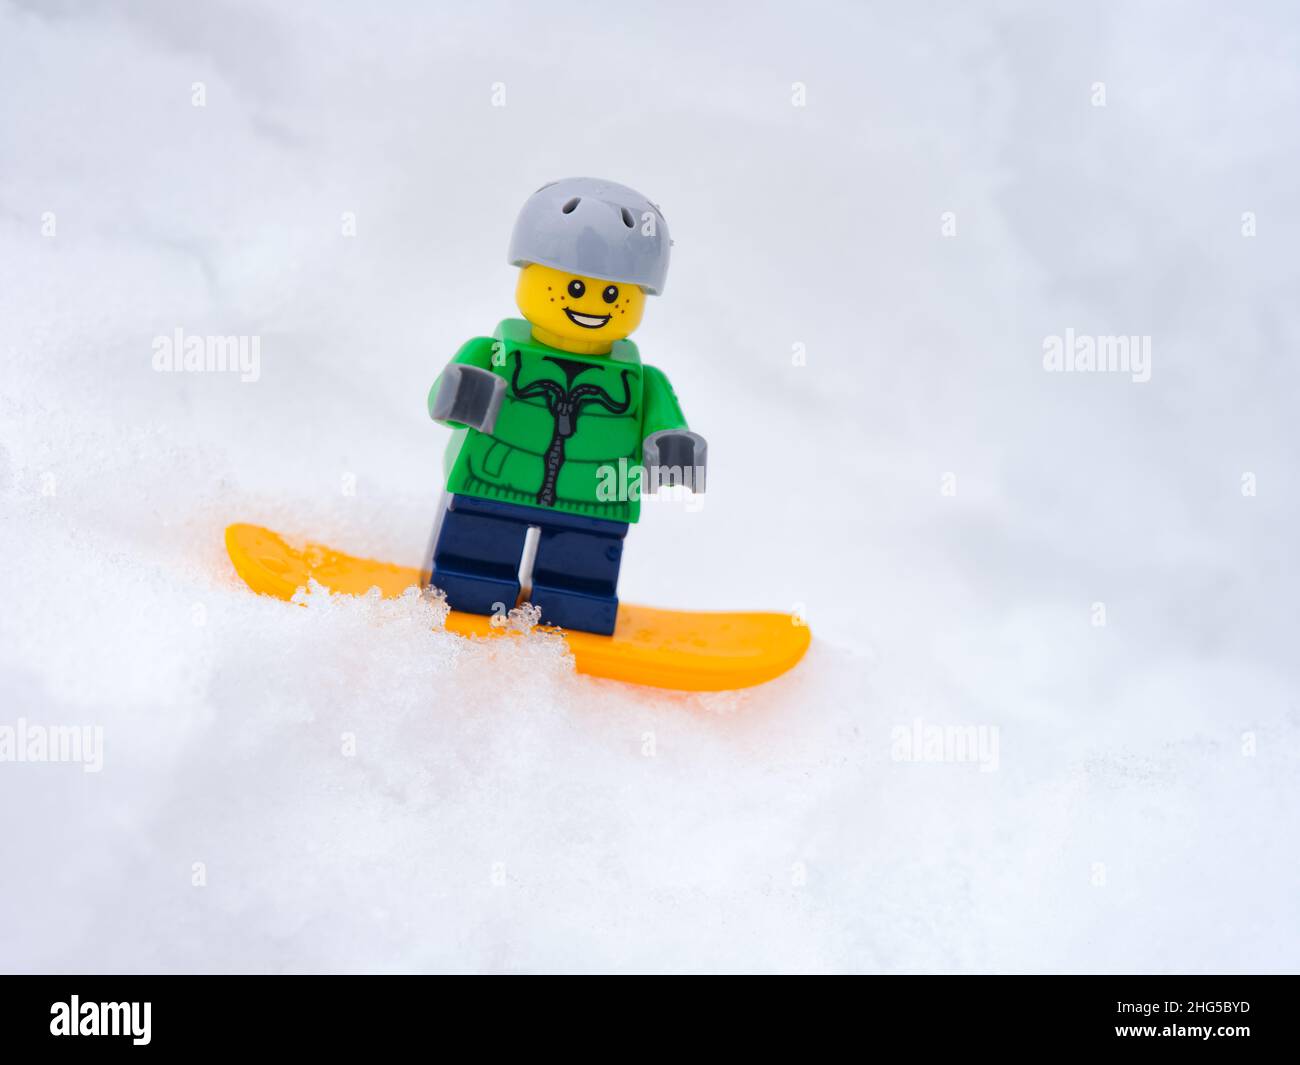 Tambov, Federazione russa - 18 gennaio 2022 una minipina di bambini Lego snowboarder snowboarder giù per una collina nevosa. Primo piano. Foto Stock